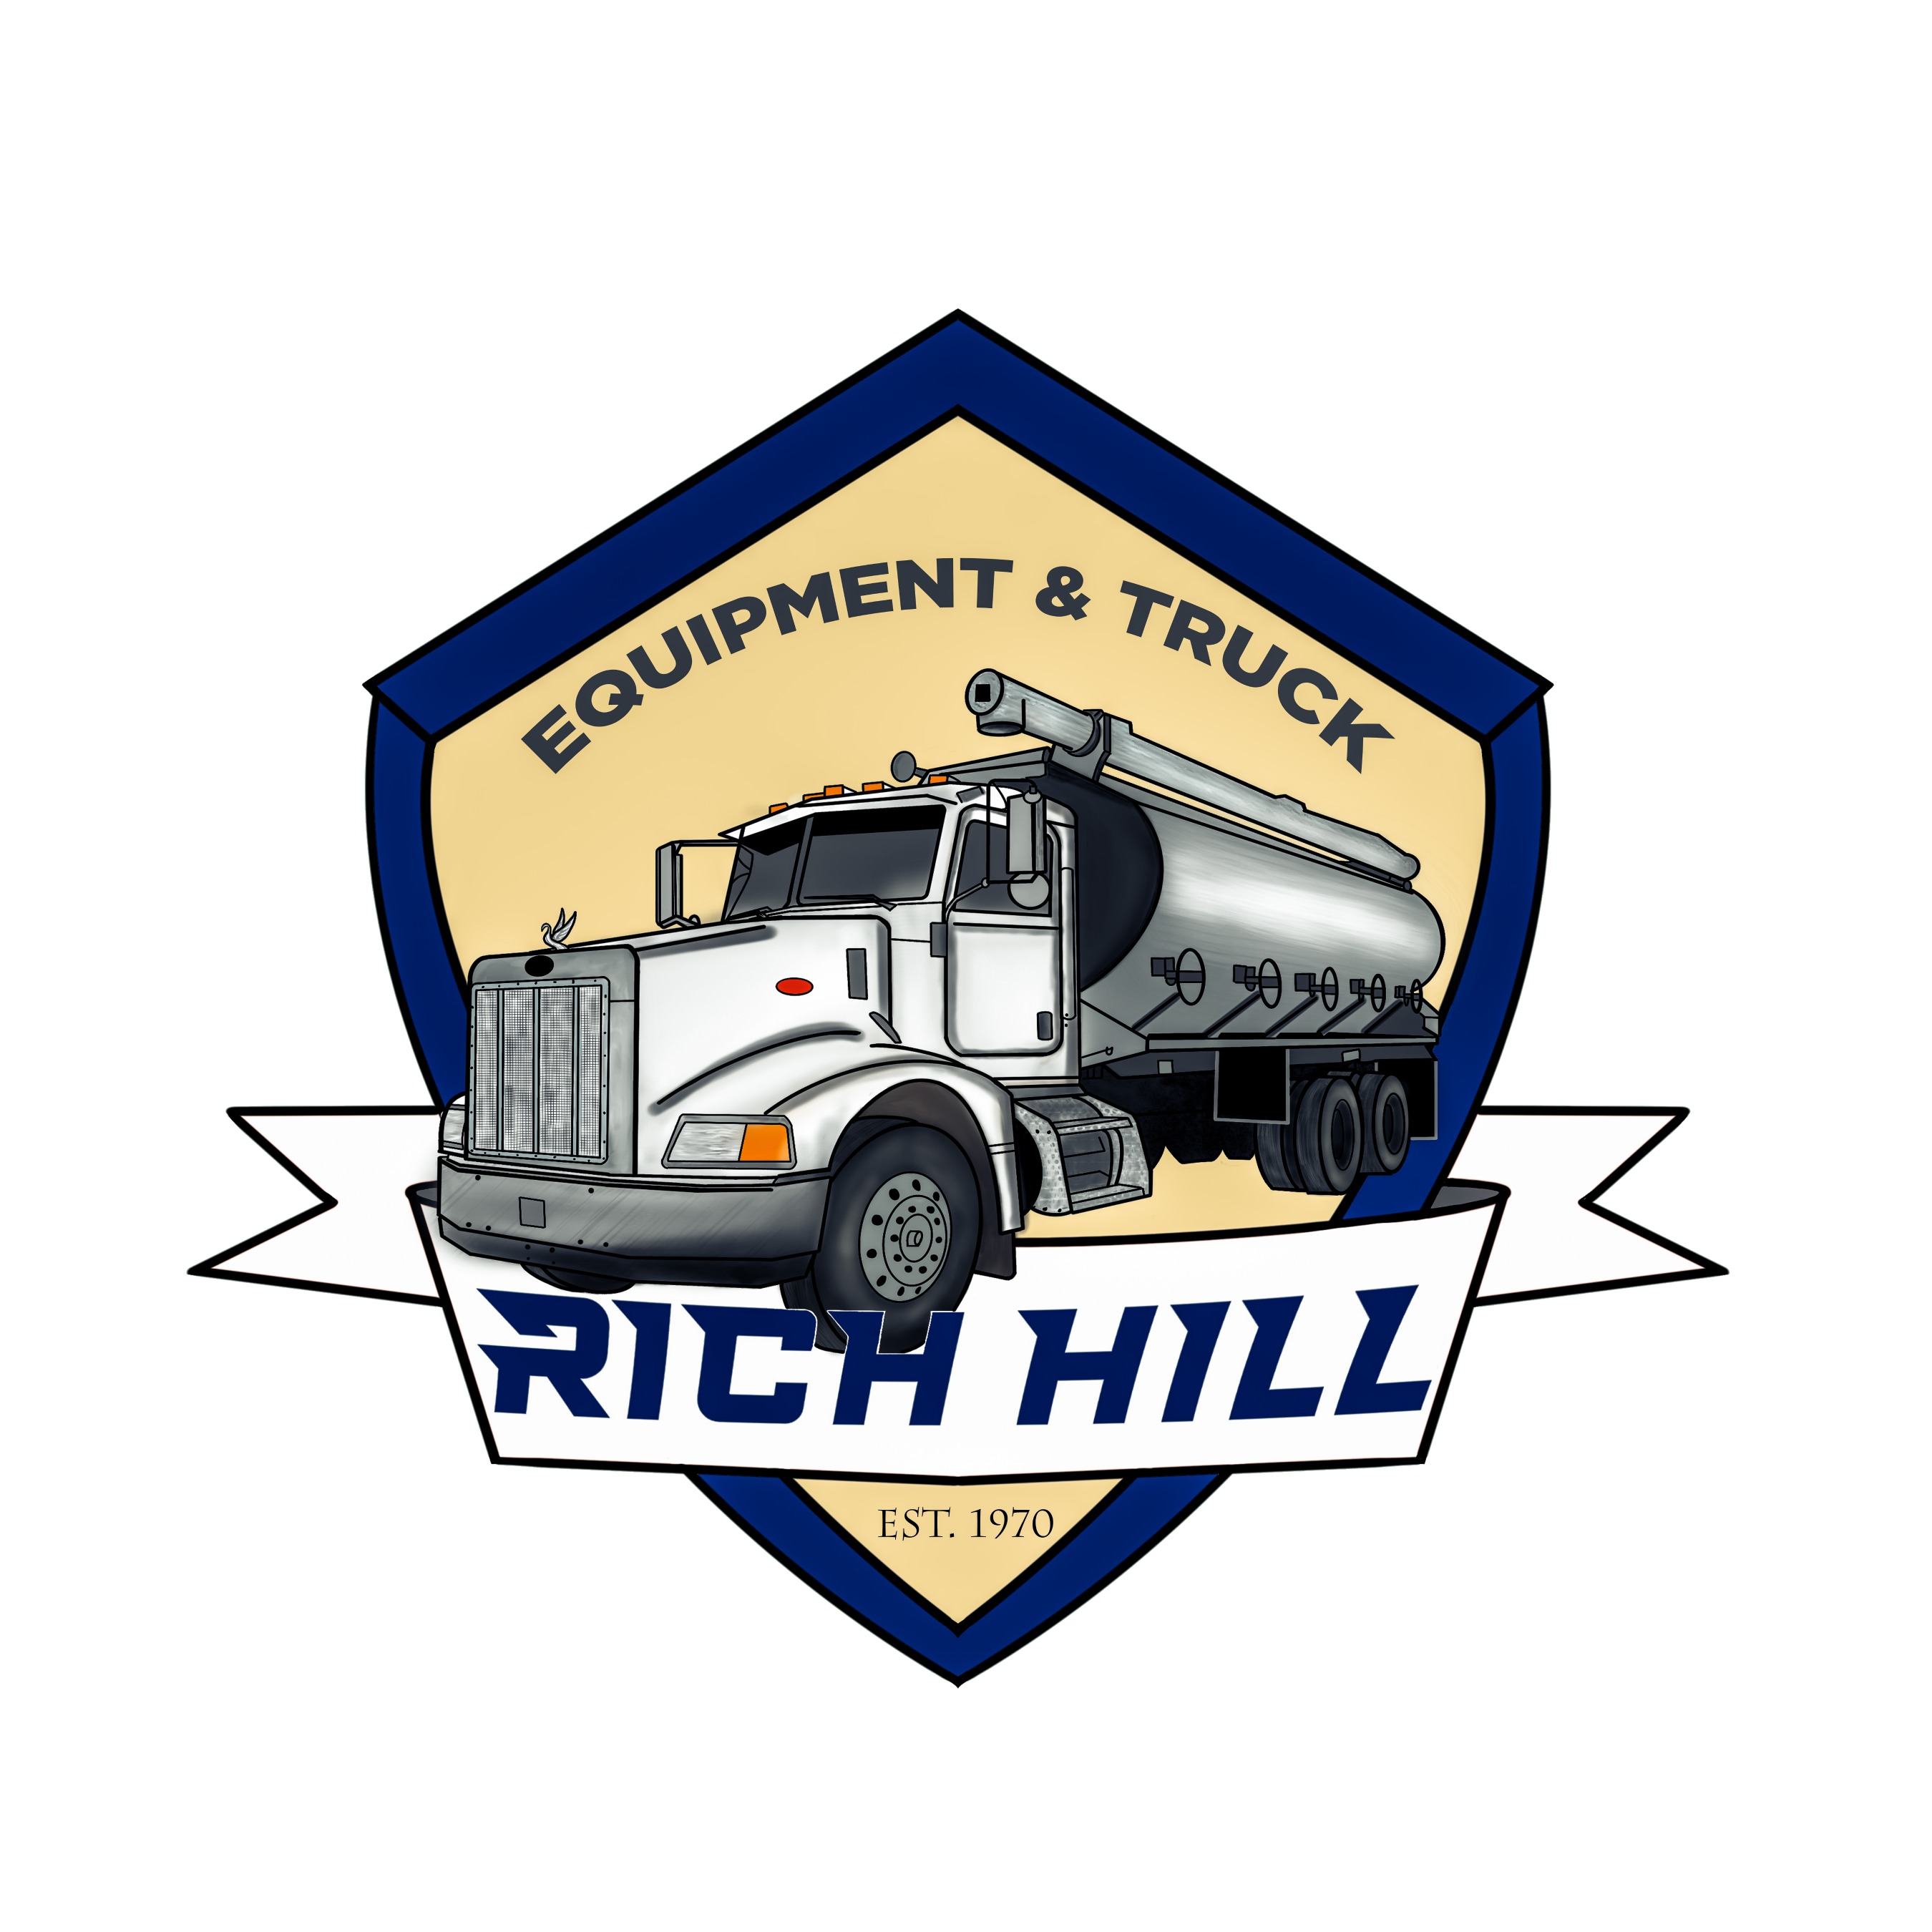 Rich Hill Truck & Equipment